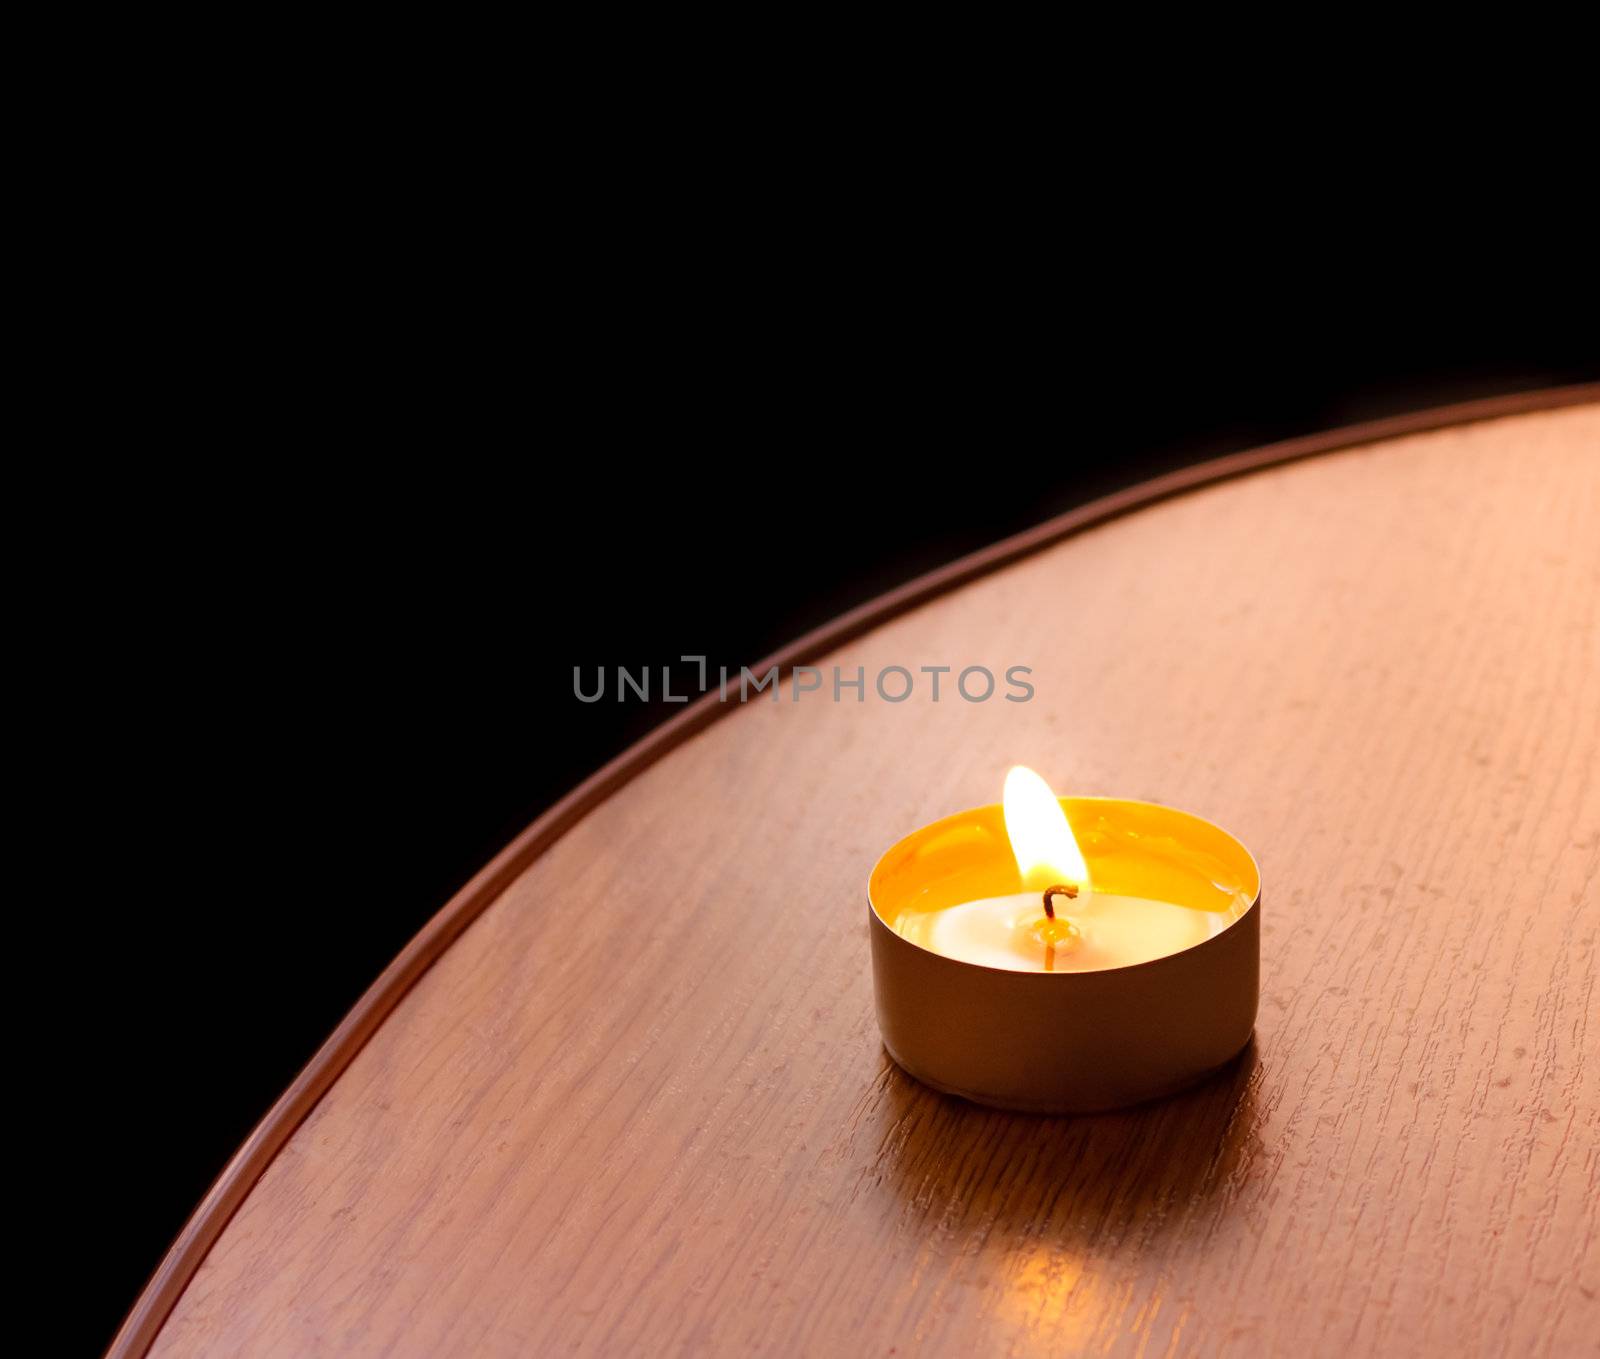 Closeup of burning candle